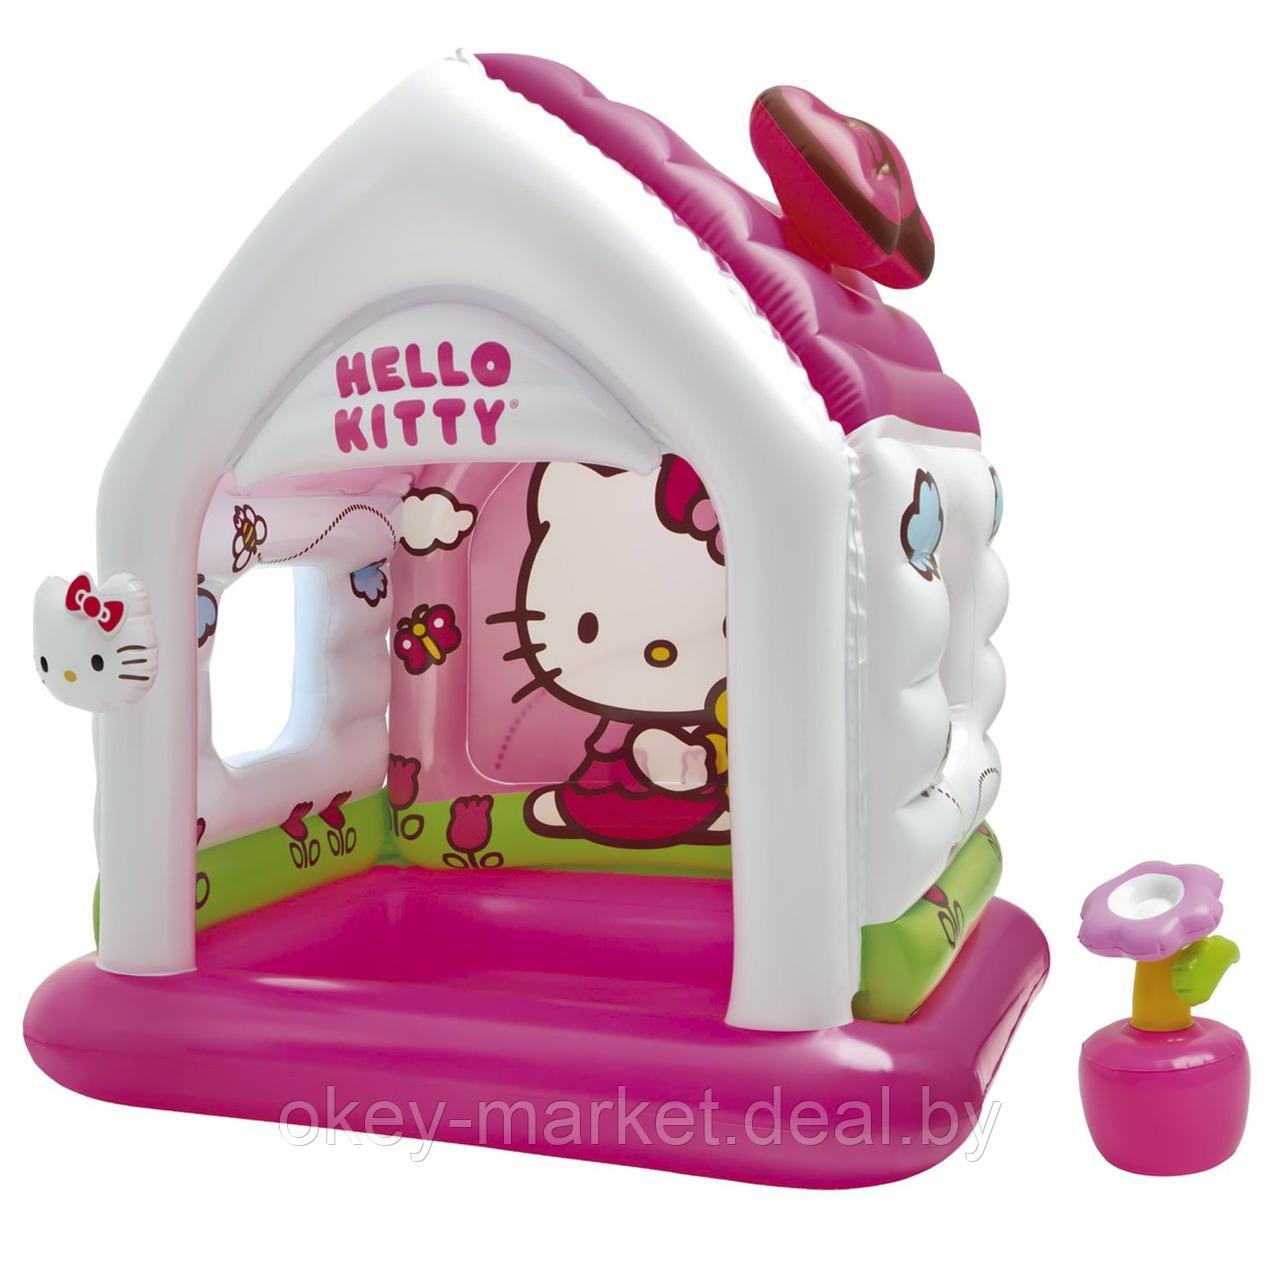 Надувной домик-манеж  Intex Hello Kitty 48631